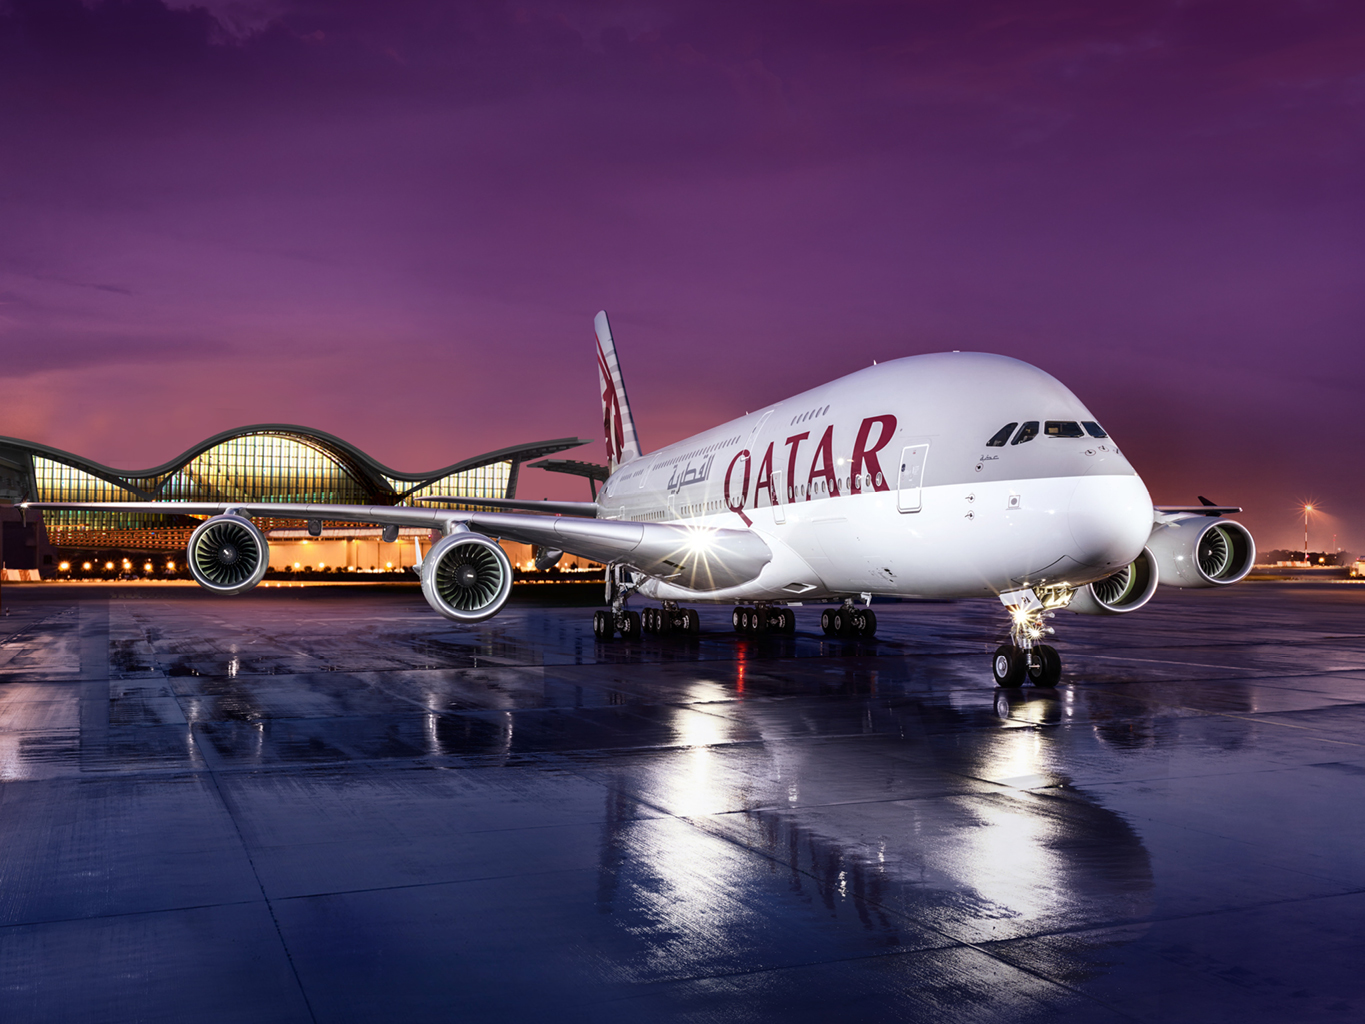 Qatar Airways: Experiencing luxury in the sky